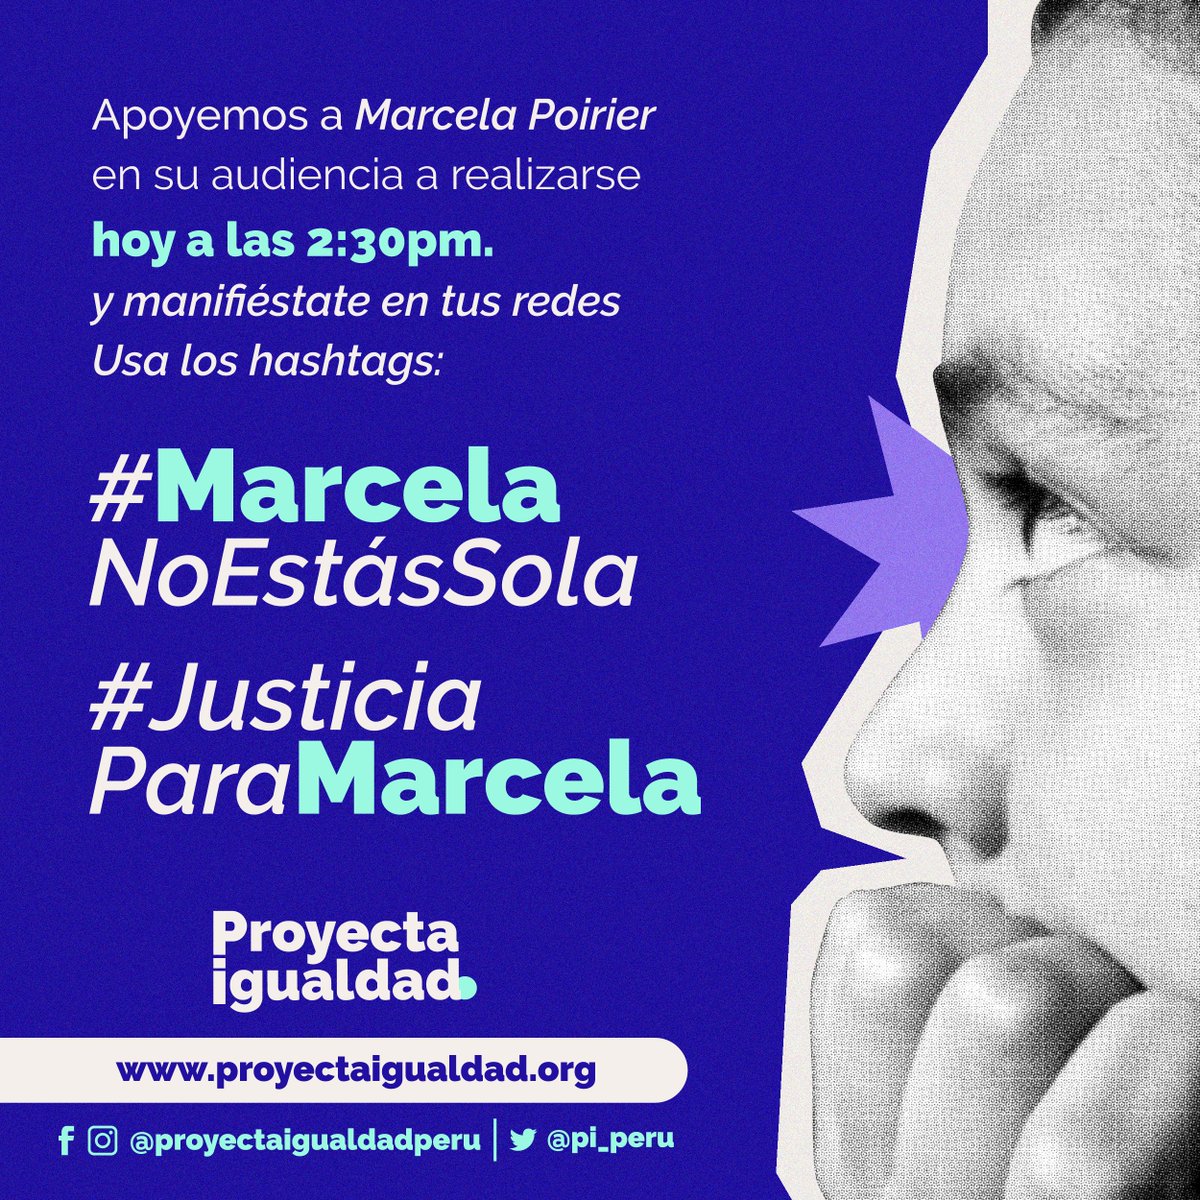 🔴#MarcelaNoEstásSola | #URGENTE AHORA comienza la audiencia por la defensa de #MarcelaPoirier junto a Brenda Álvarez (@alvabren), abogada de Marcela por Proyecta Igualdad. Nos encontramos vigilantes frente a los resultados. #JusticiaParaMarcela